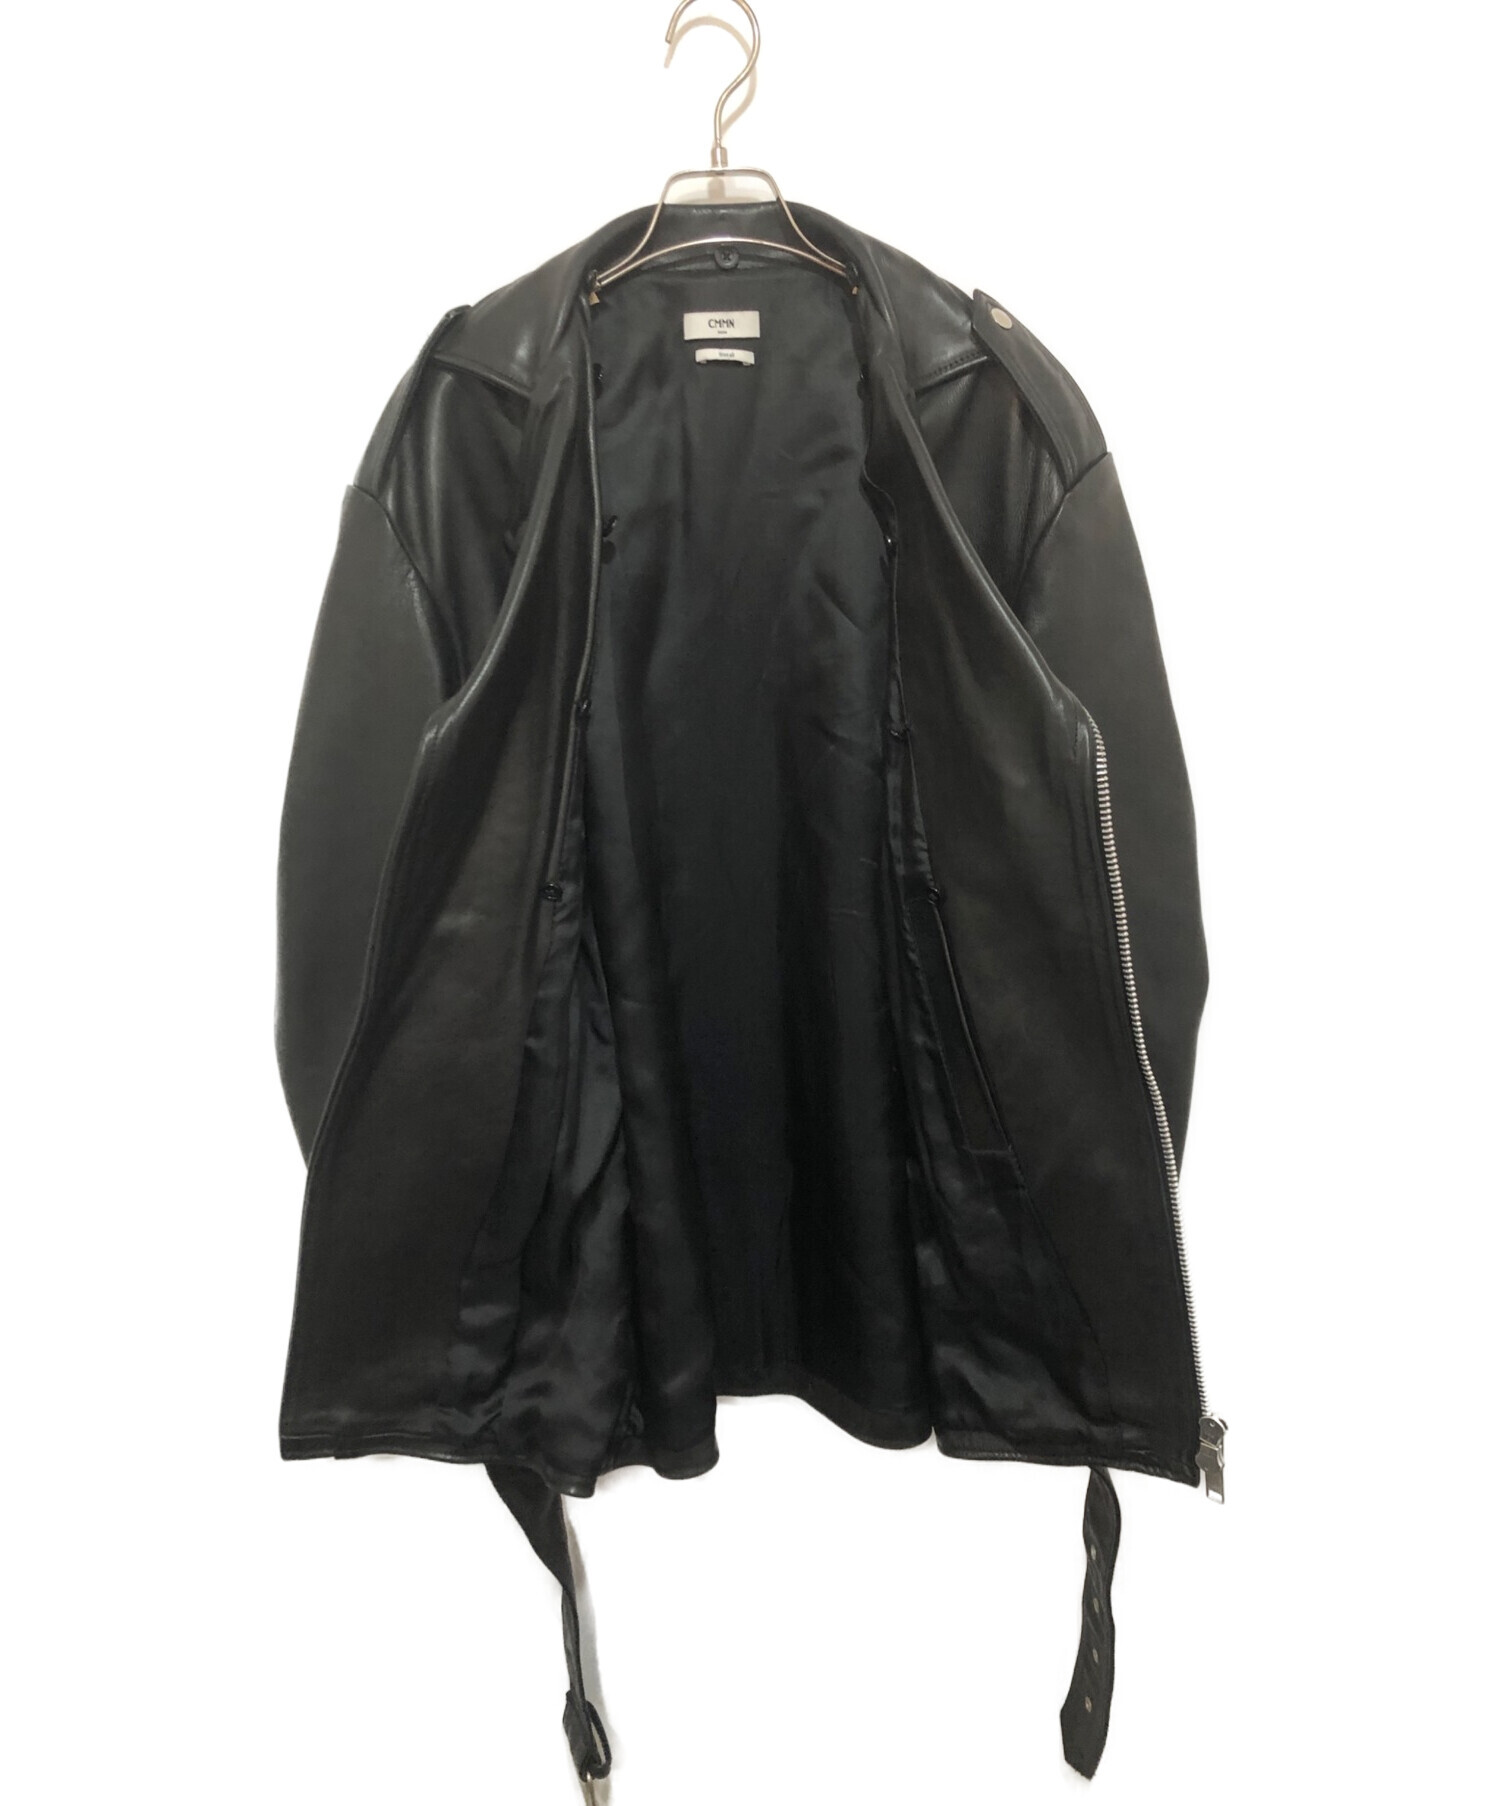 CMMN SWDN (コモンスウェーデン) ダブルライダースジャケット ブラック サイズ:48